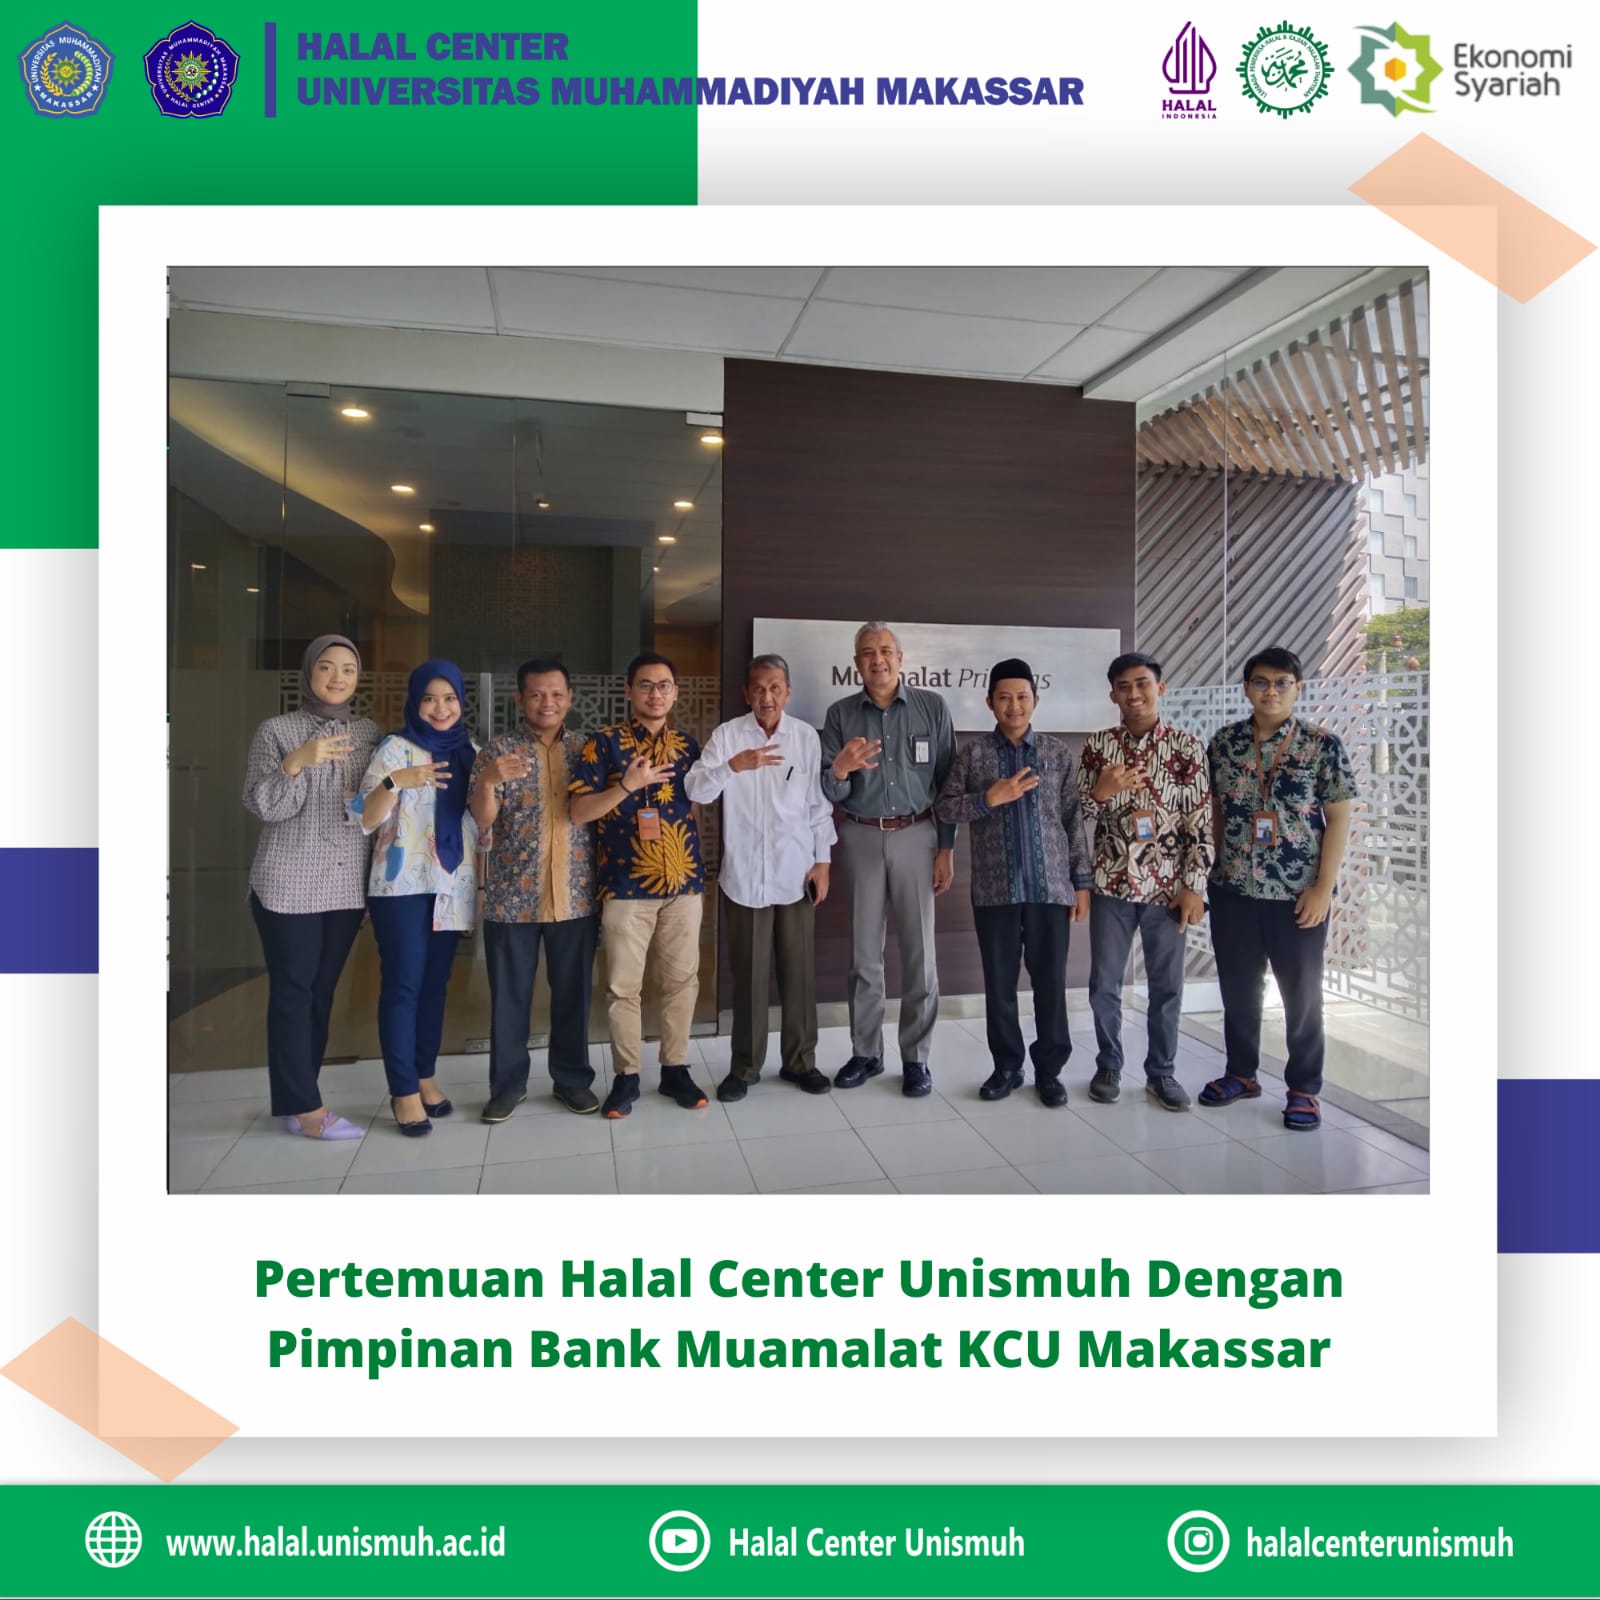 Pertemuan Halal Center Unismuh Dengan Pimpinan Bank Muamalat KCU Makassar Dalam Rangka Sinergi Strategic Partner Pengembangan Industri Halal